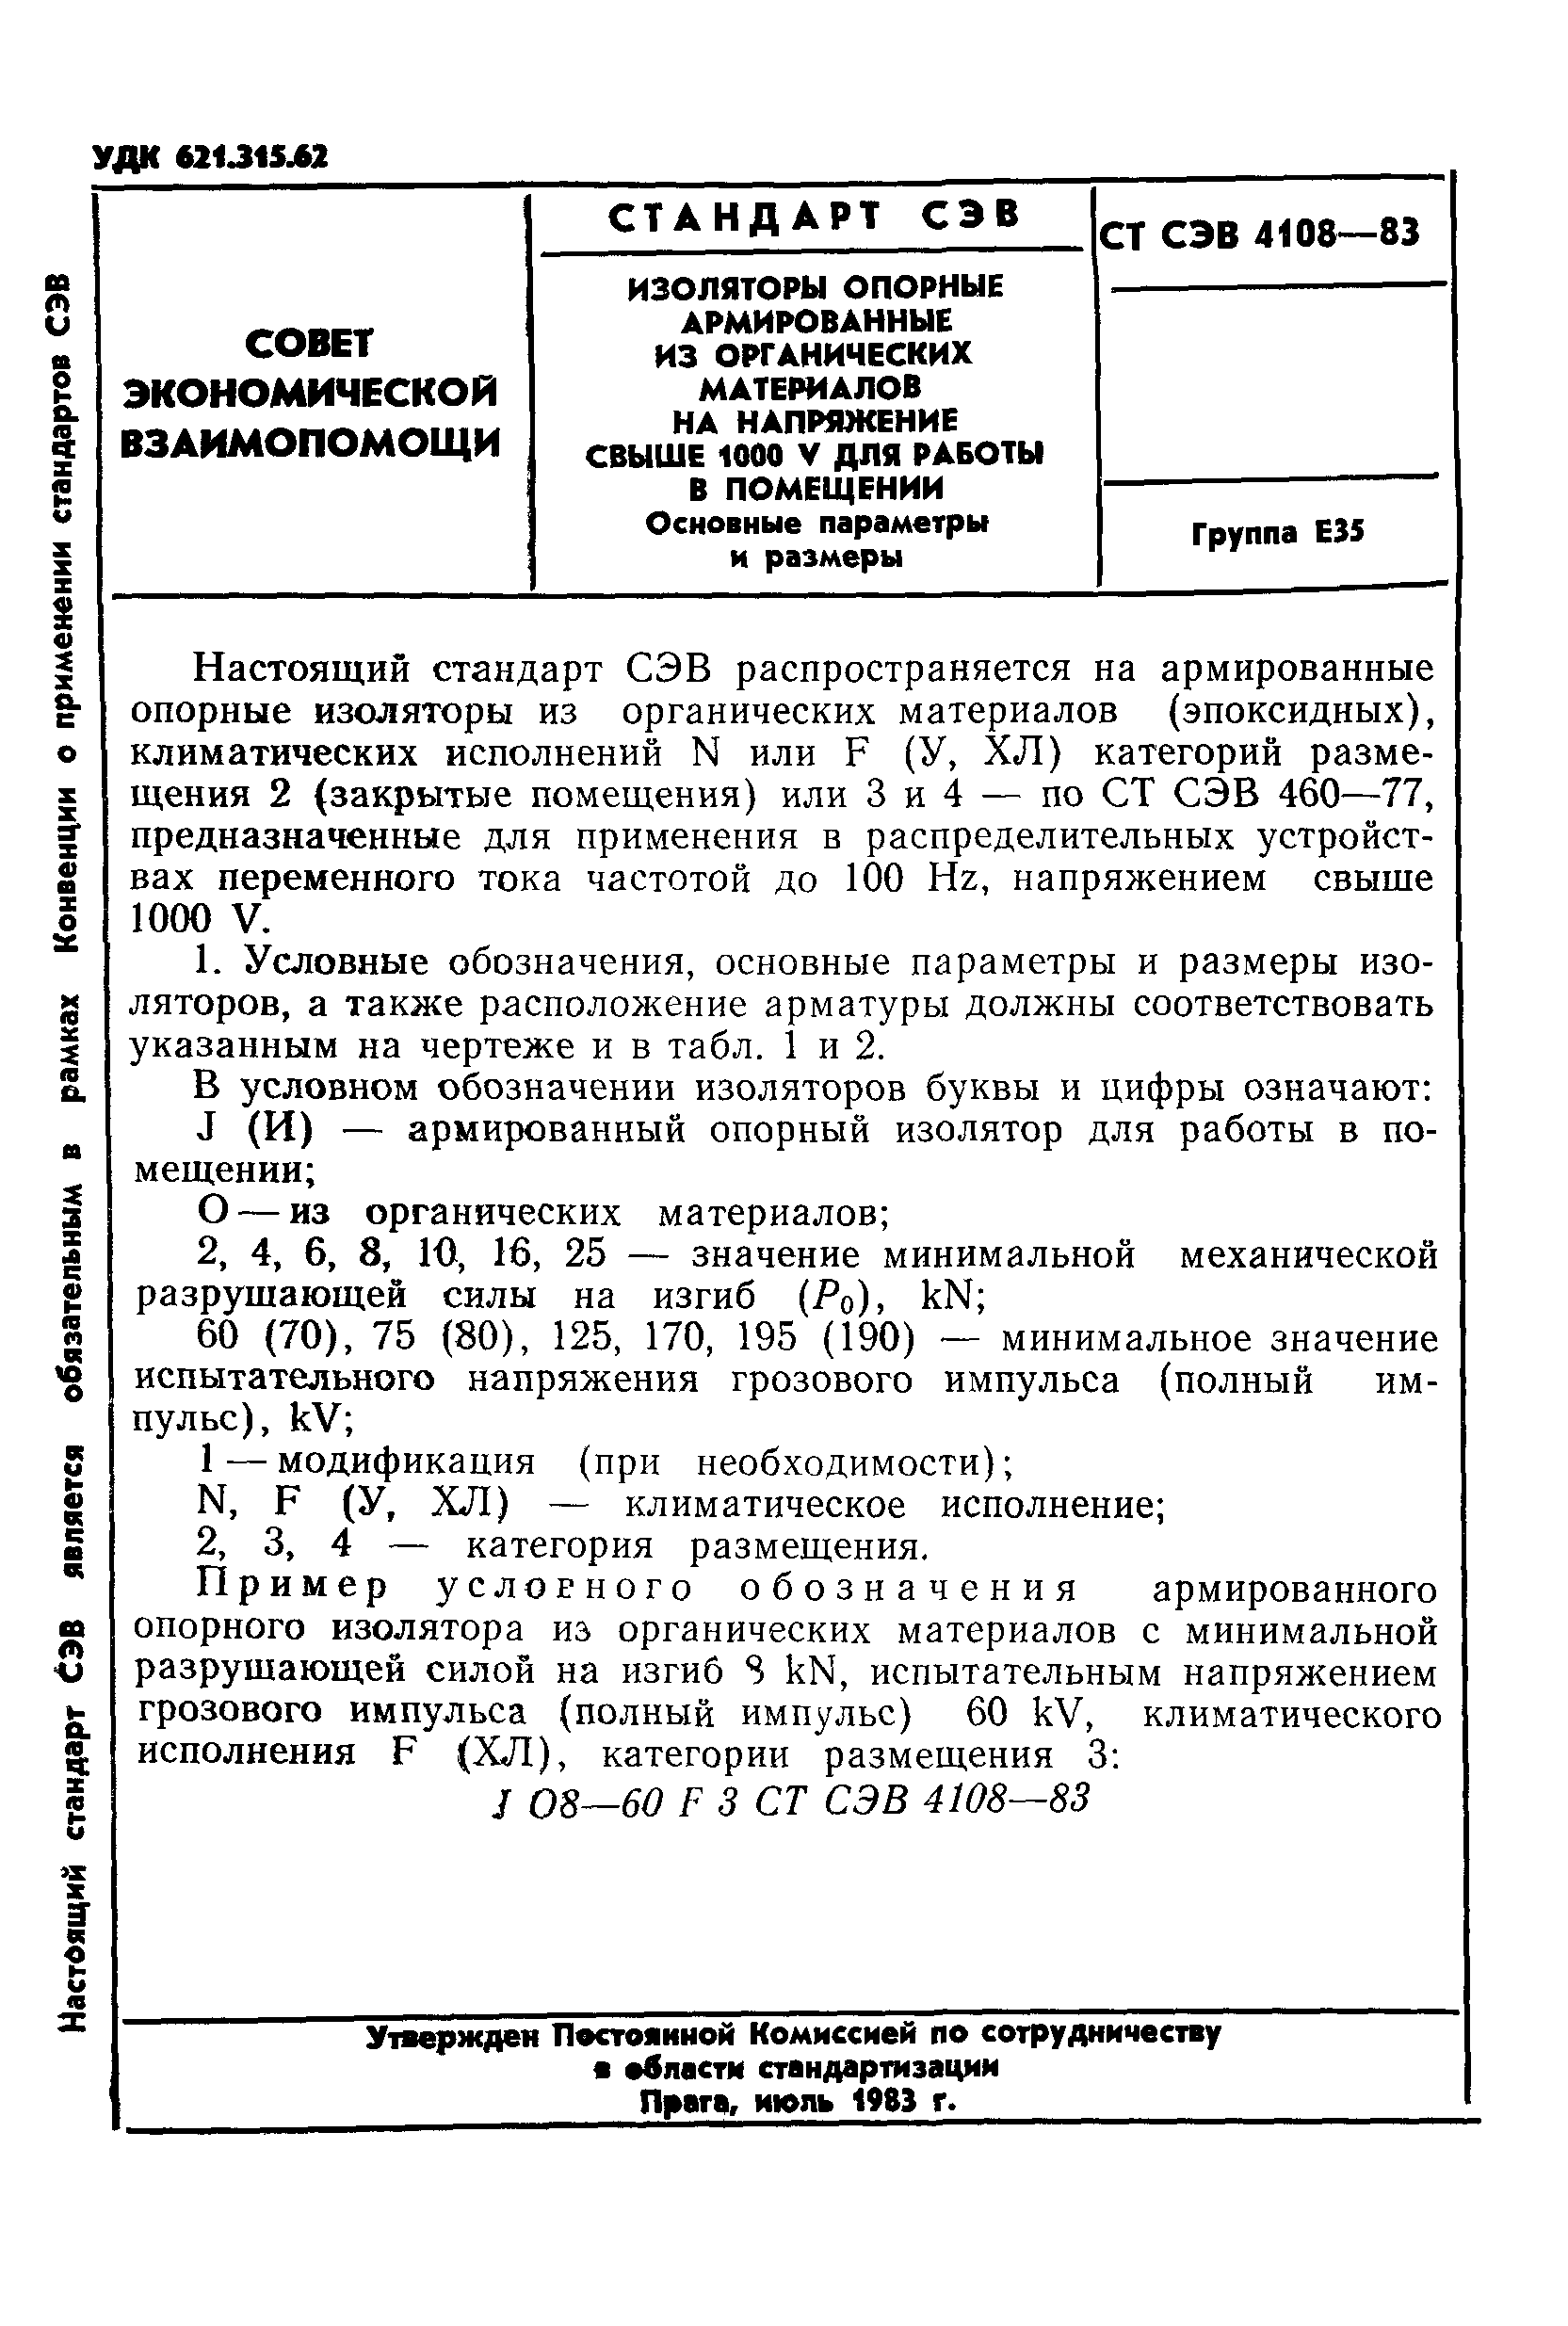 СТ СЭВ 4108-83